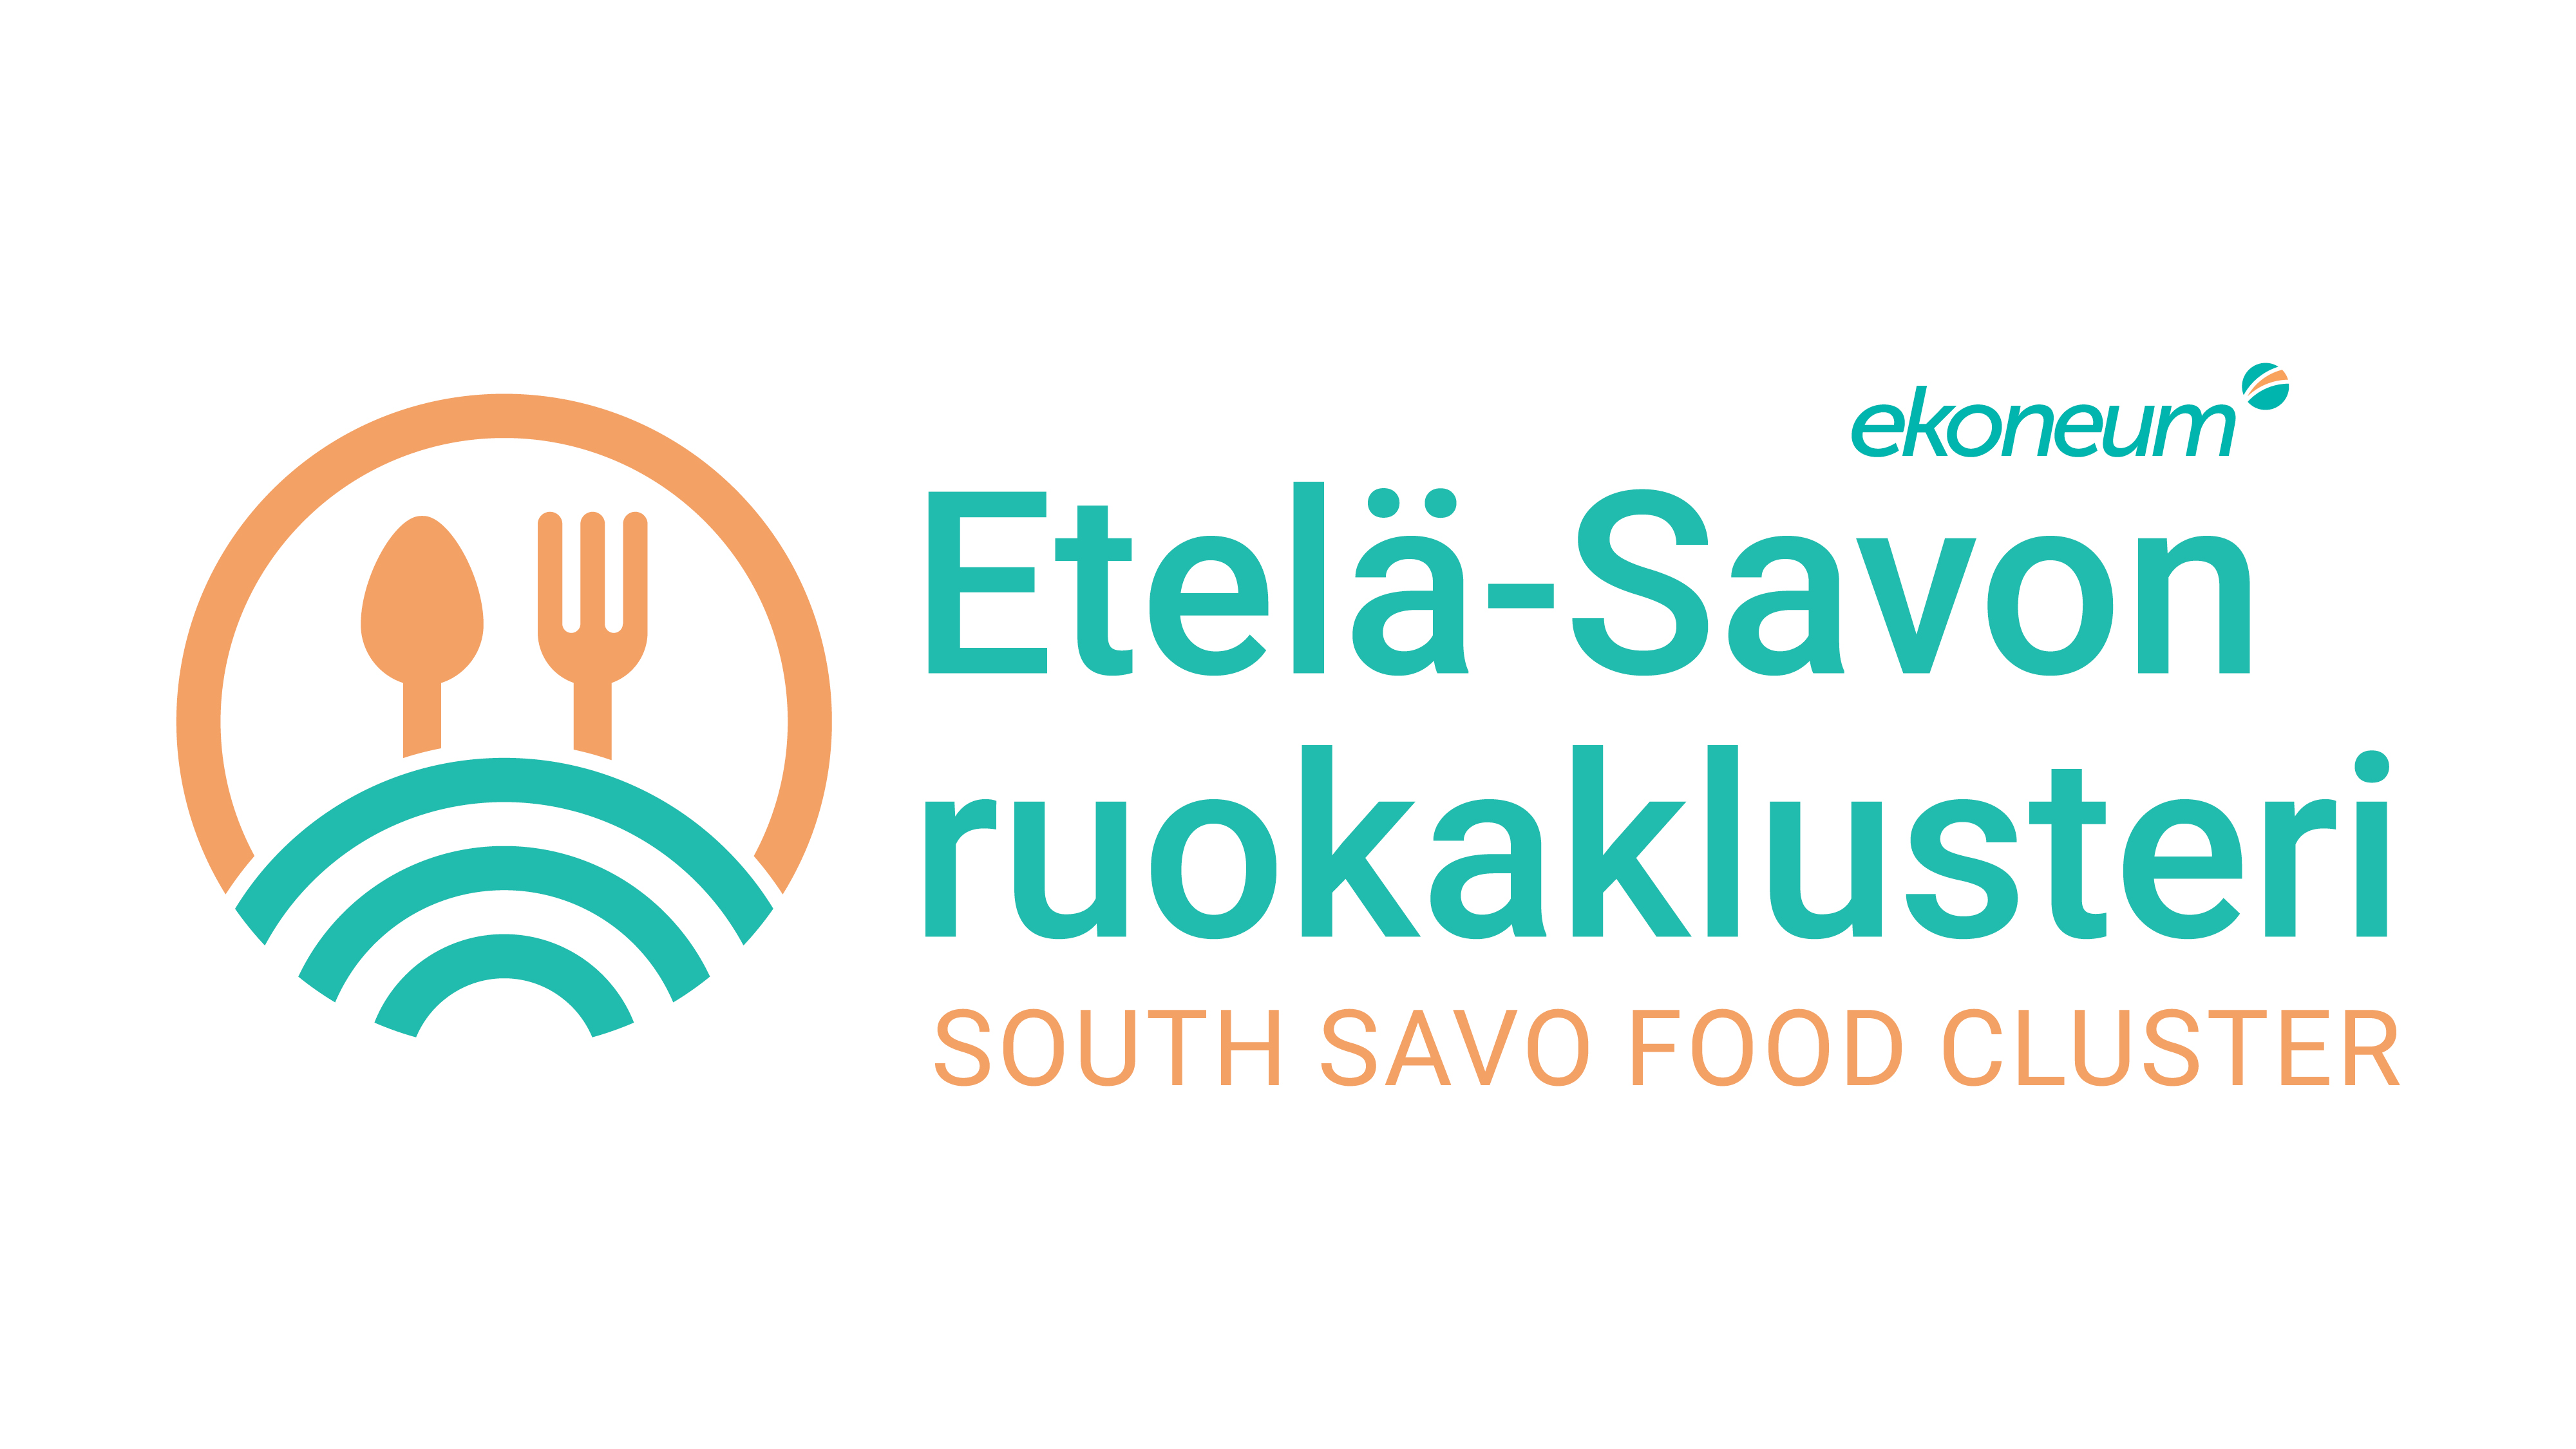 Etelä-Savon ruoka-ala otti kesällä ison harppauksen, kun Etelä-Savon ruokaklusteri perustettiin. Klusteri vahvistaa Etelä-Savon asemaa menestyvänä ja innovatiivisena ruokamaakuntana.  